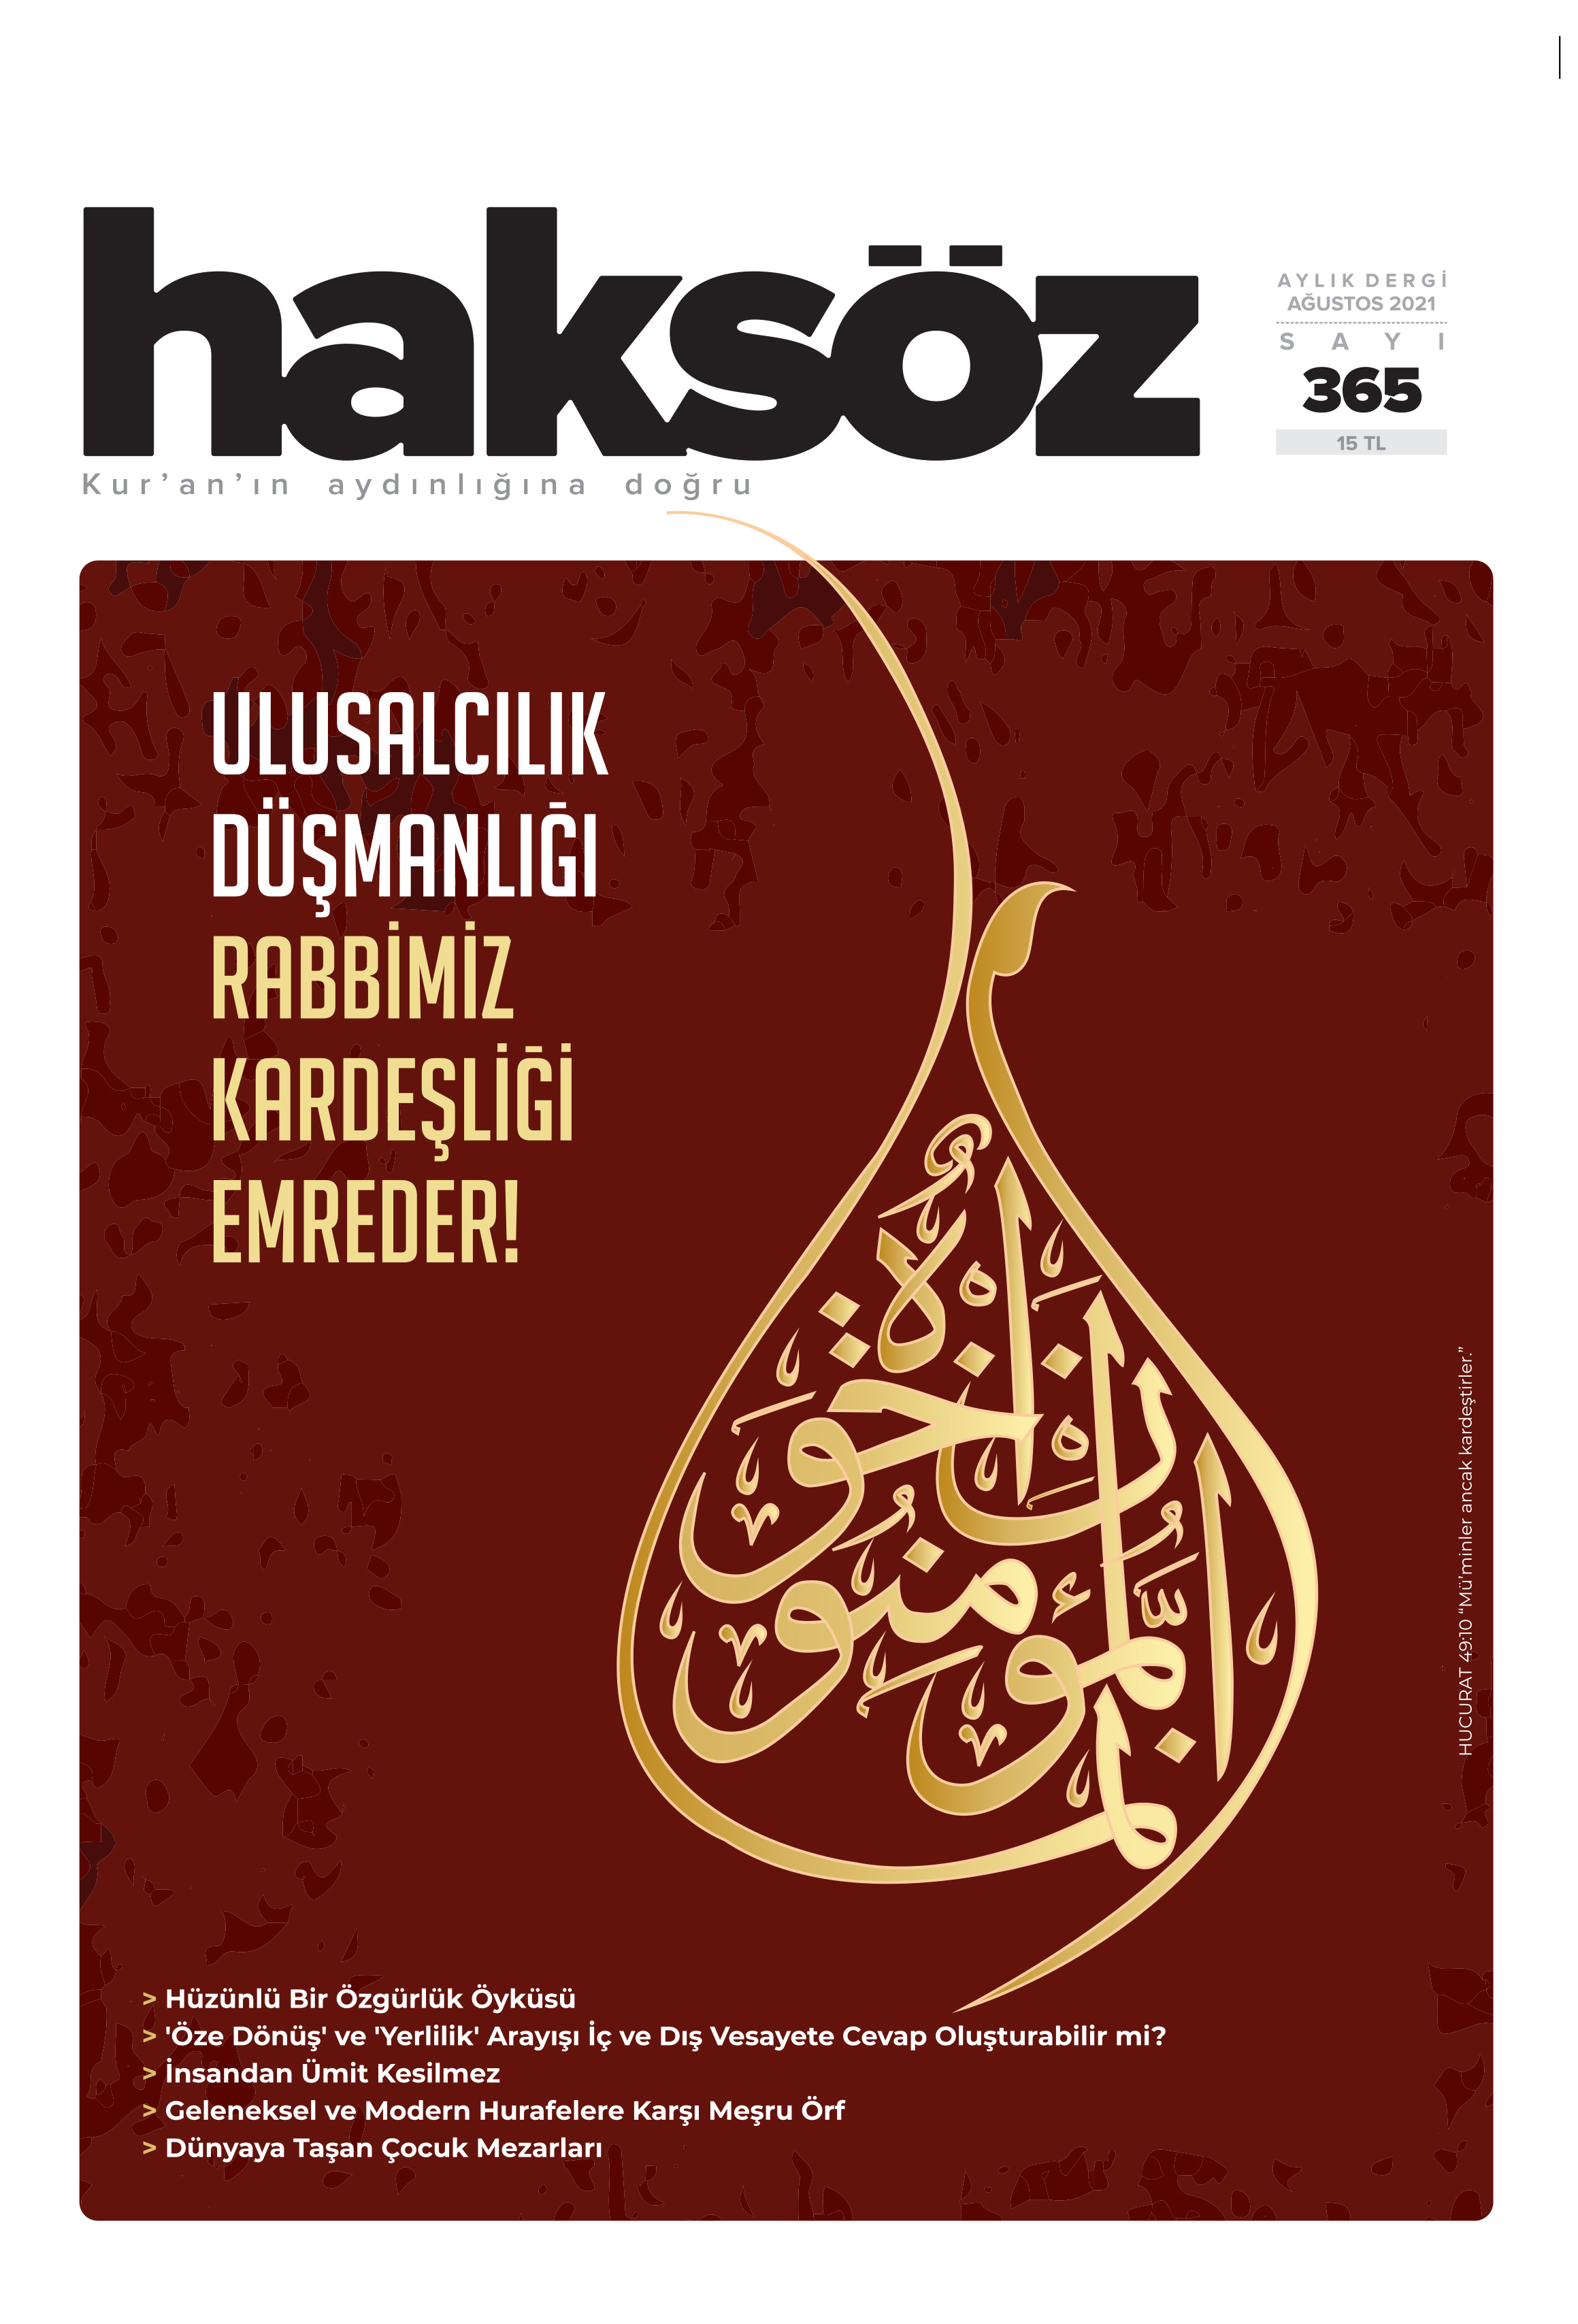 haksoz-kapak-365-agustos2021-kardeslik.jpg